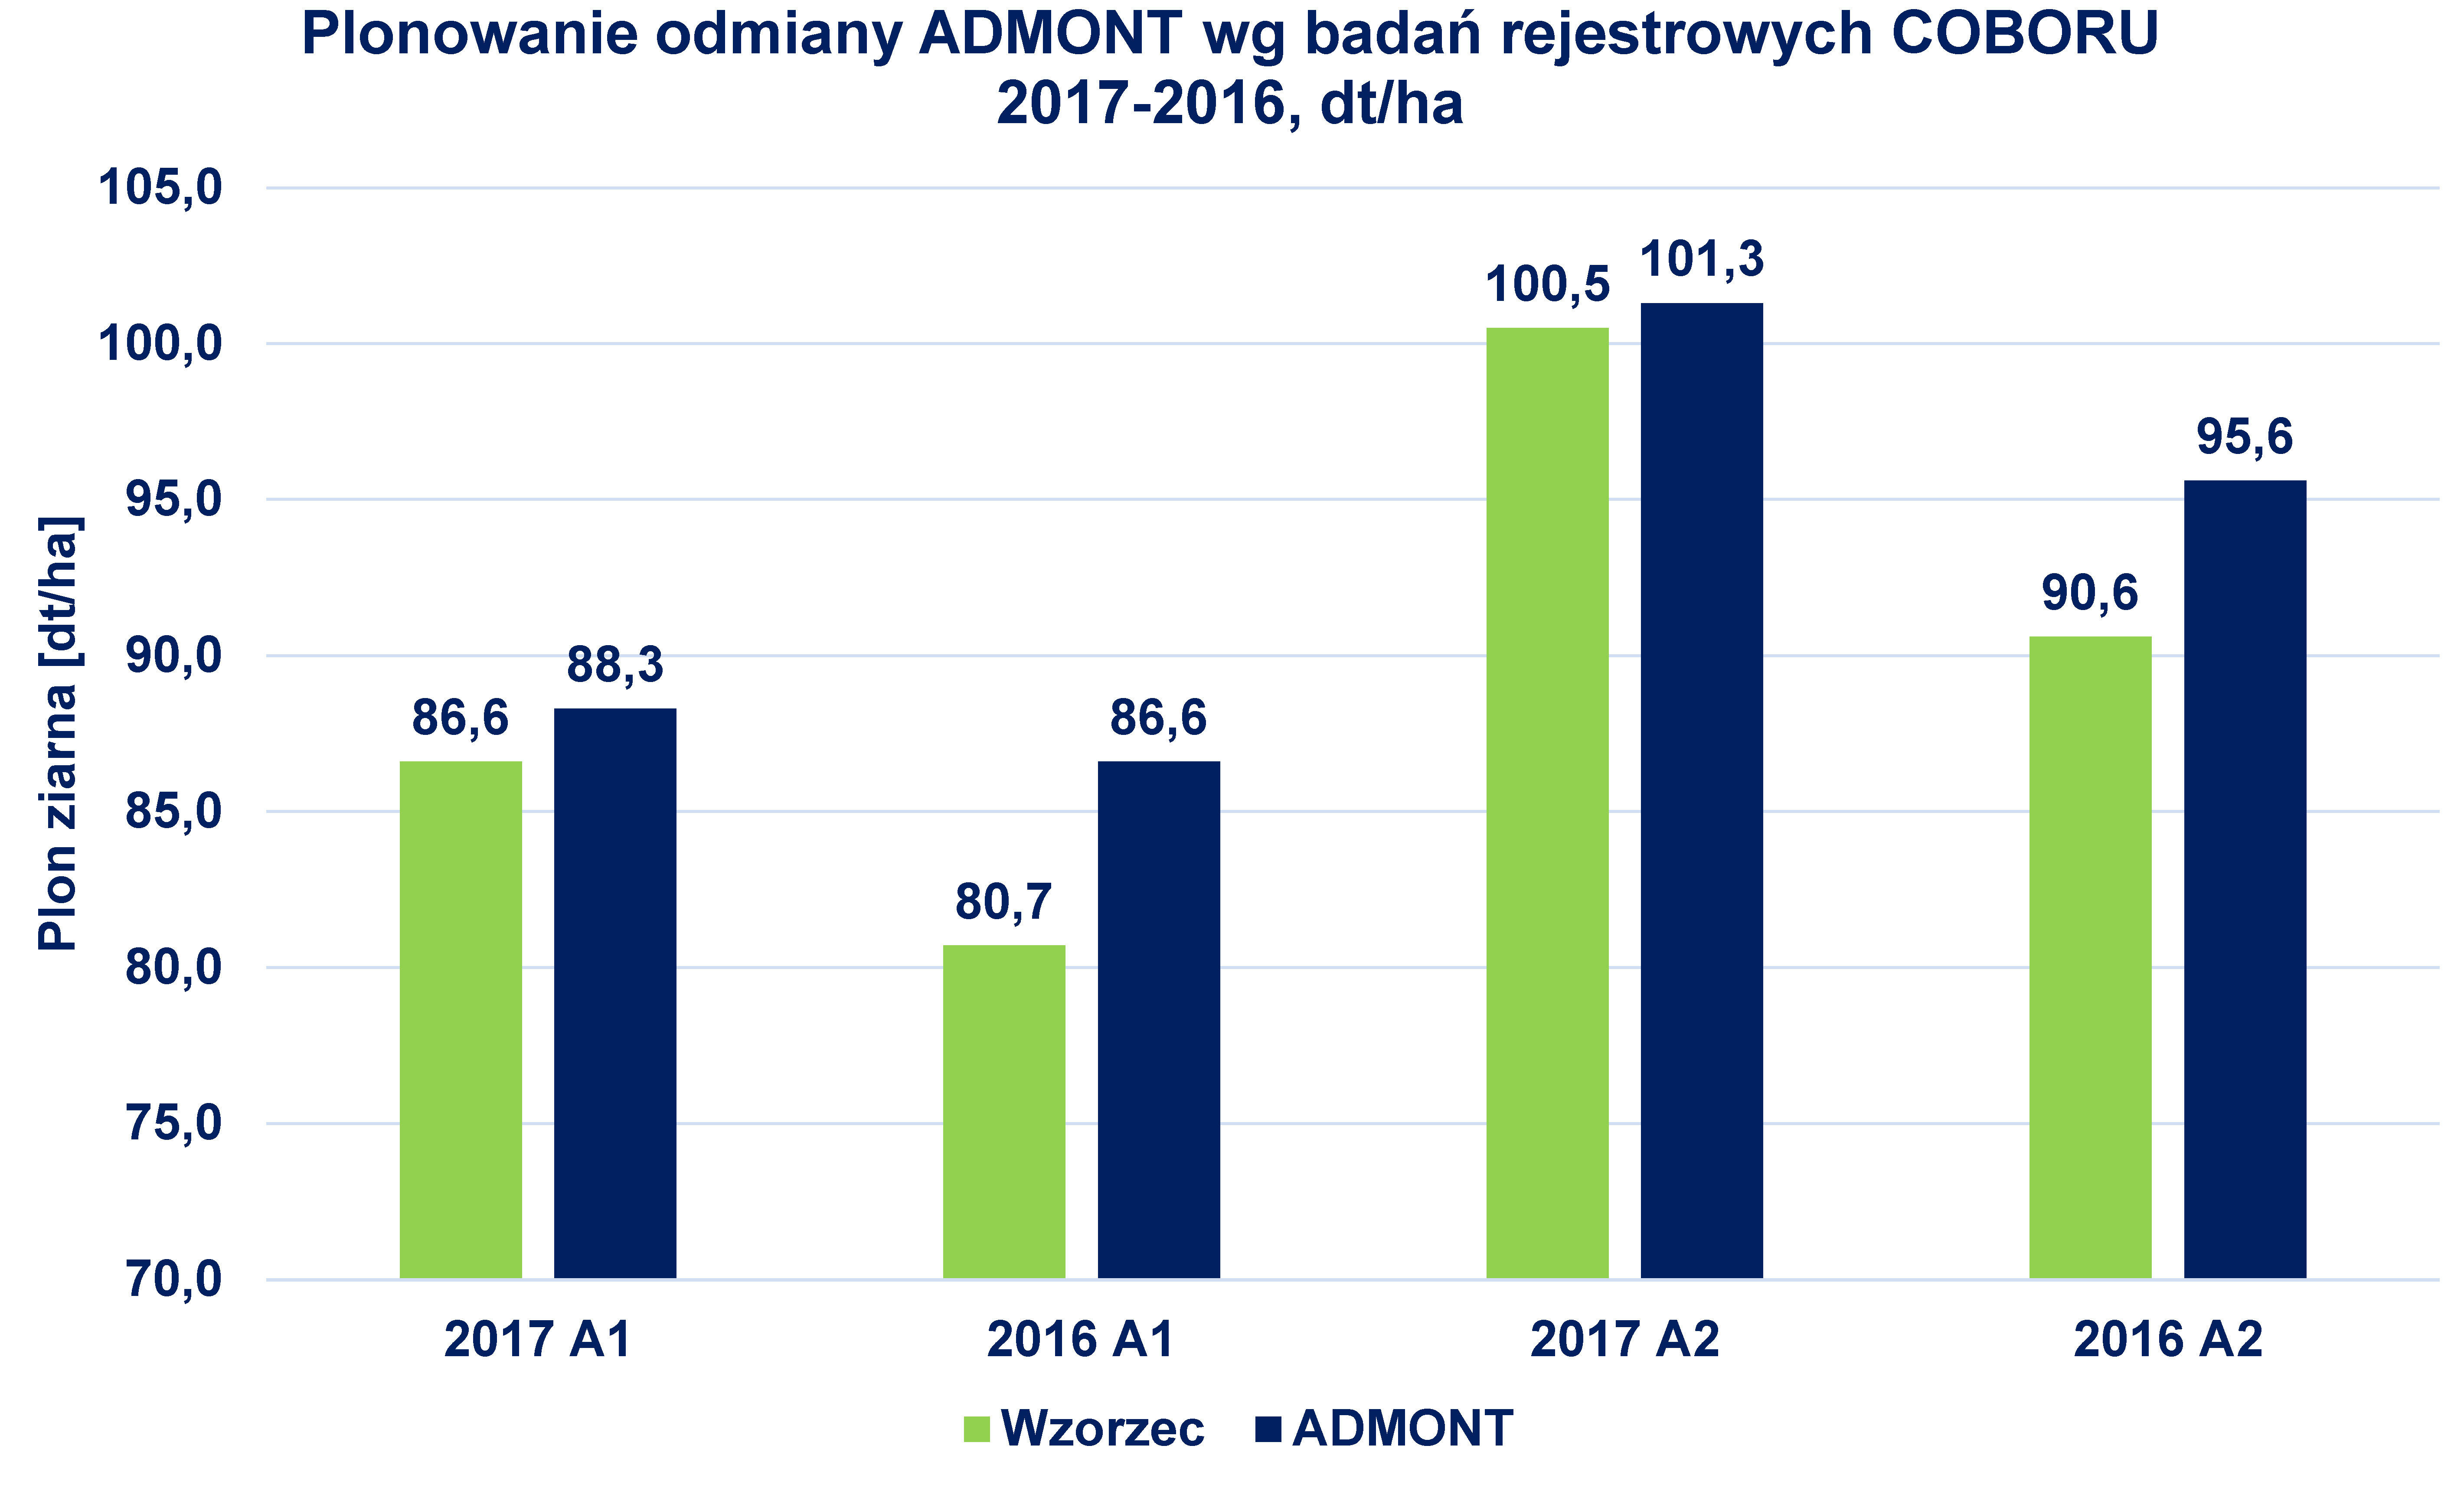 SU Admont A/B - plonowanie odmiany na tle innych odmian wzorcowych, 2016-2017